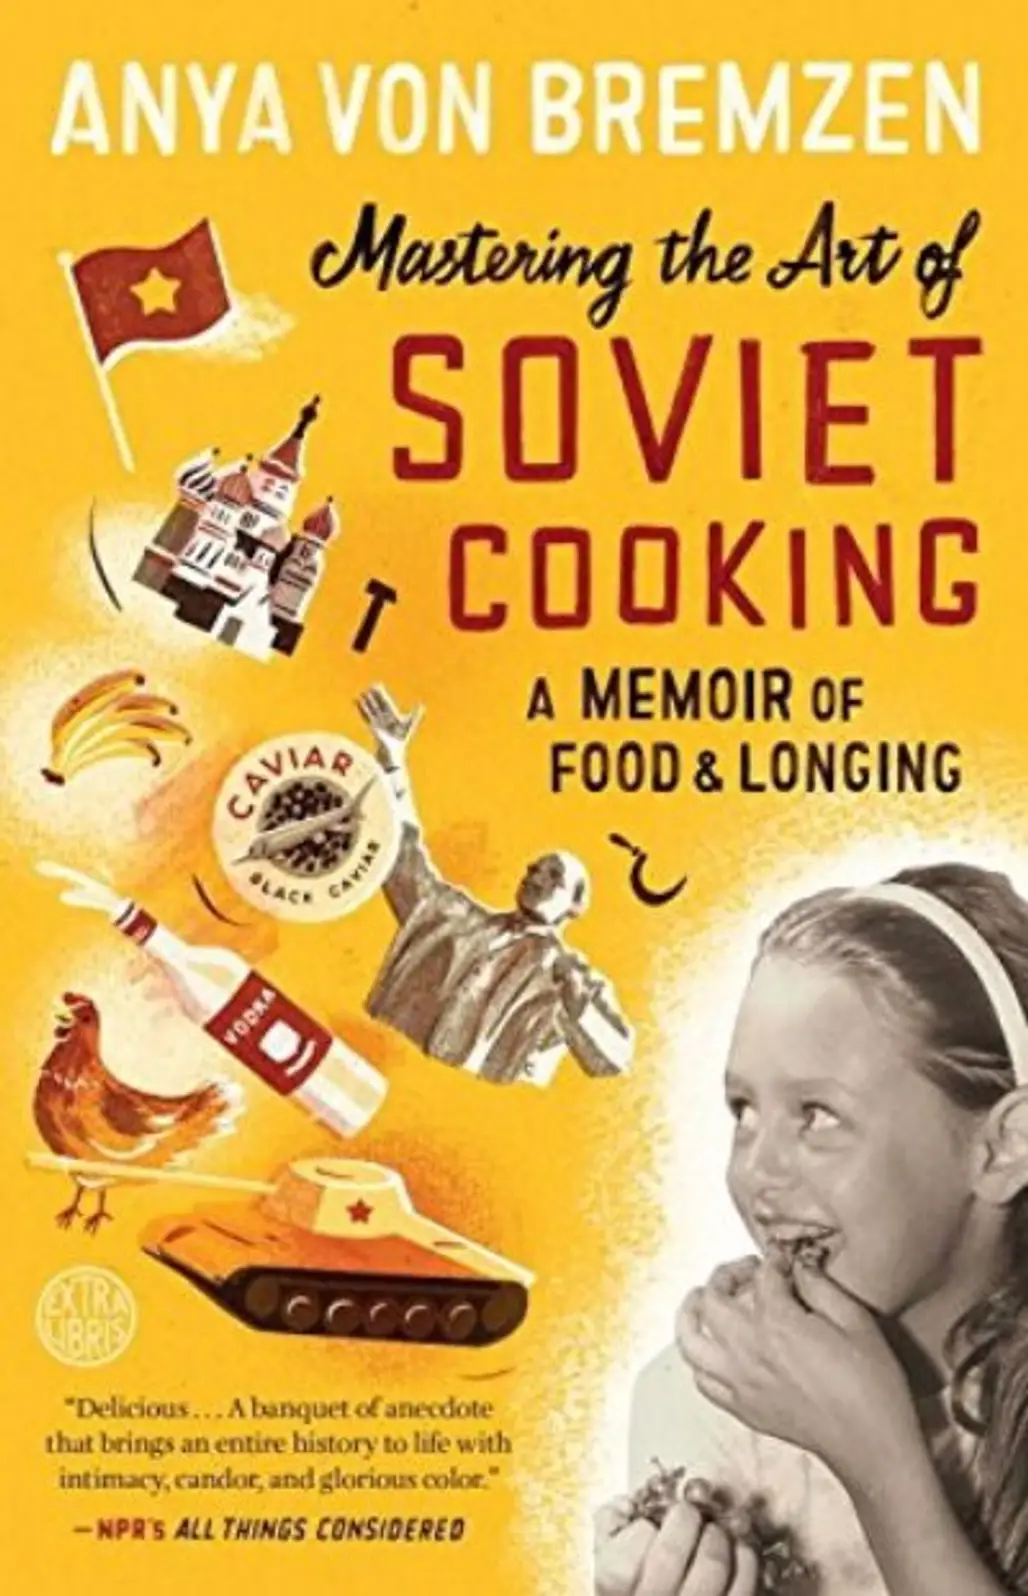 "Mastering the Art of Soviet Cooking" by Anya Von Bremzen